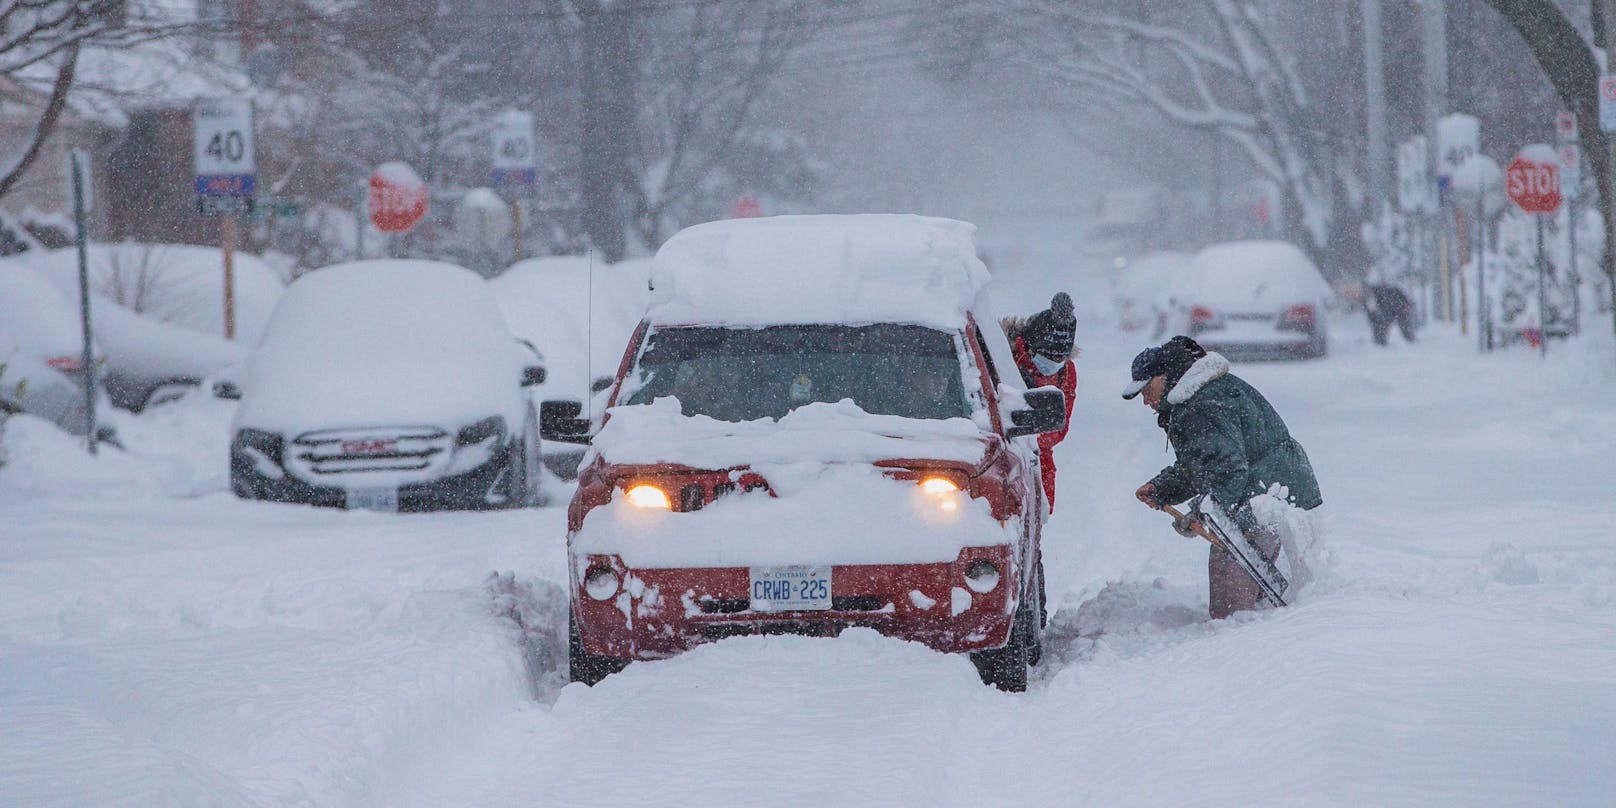 In Hamilton, Ontario, versuchen diese Menschen ihren Wagen aus den Schneemassen zu befreien.